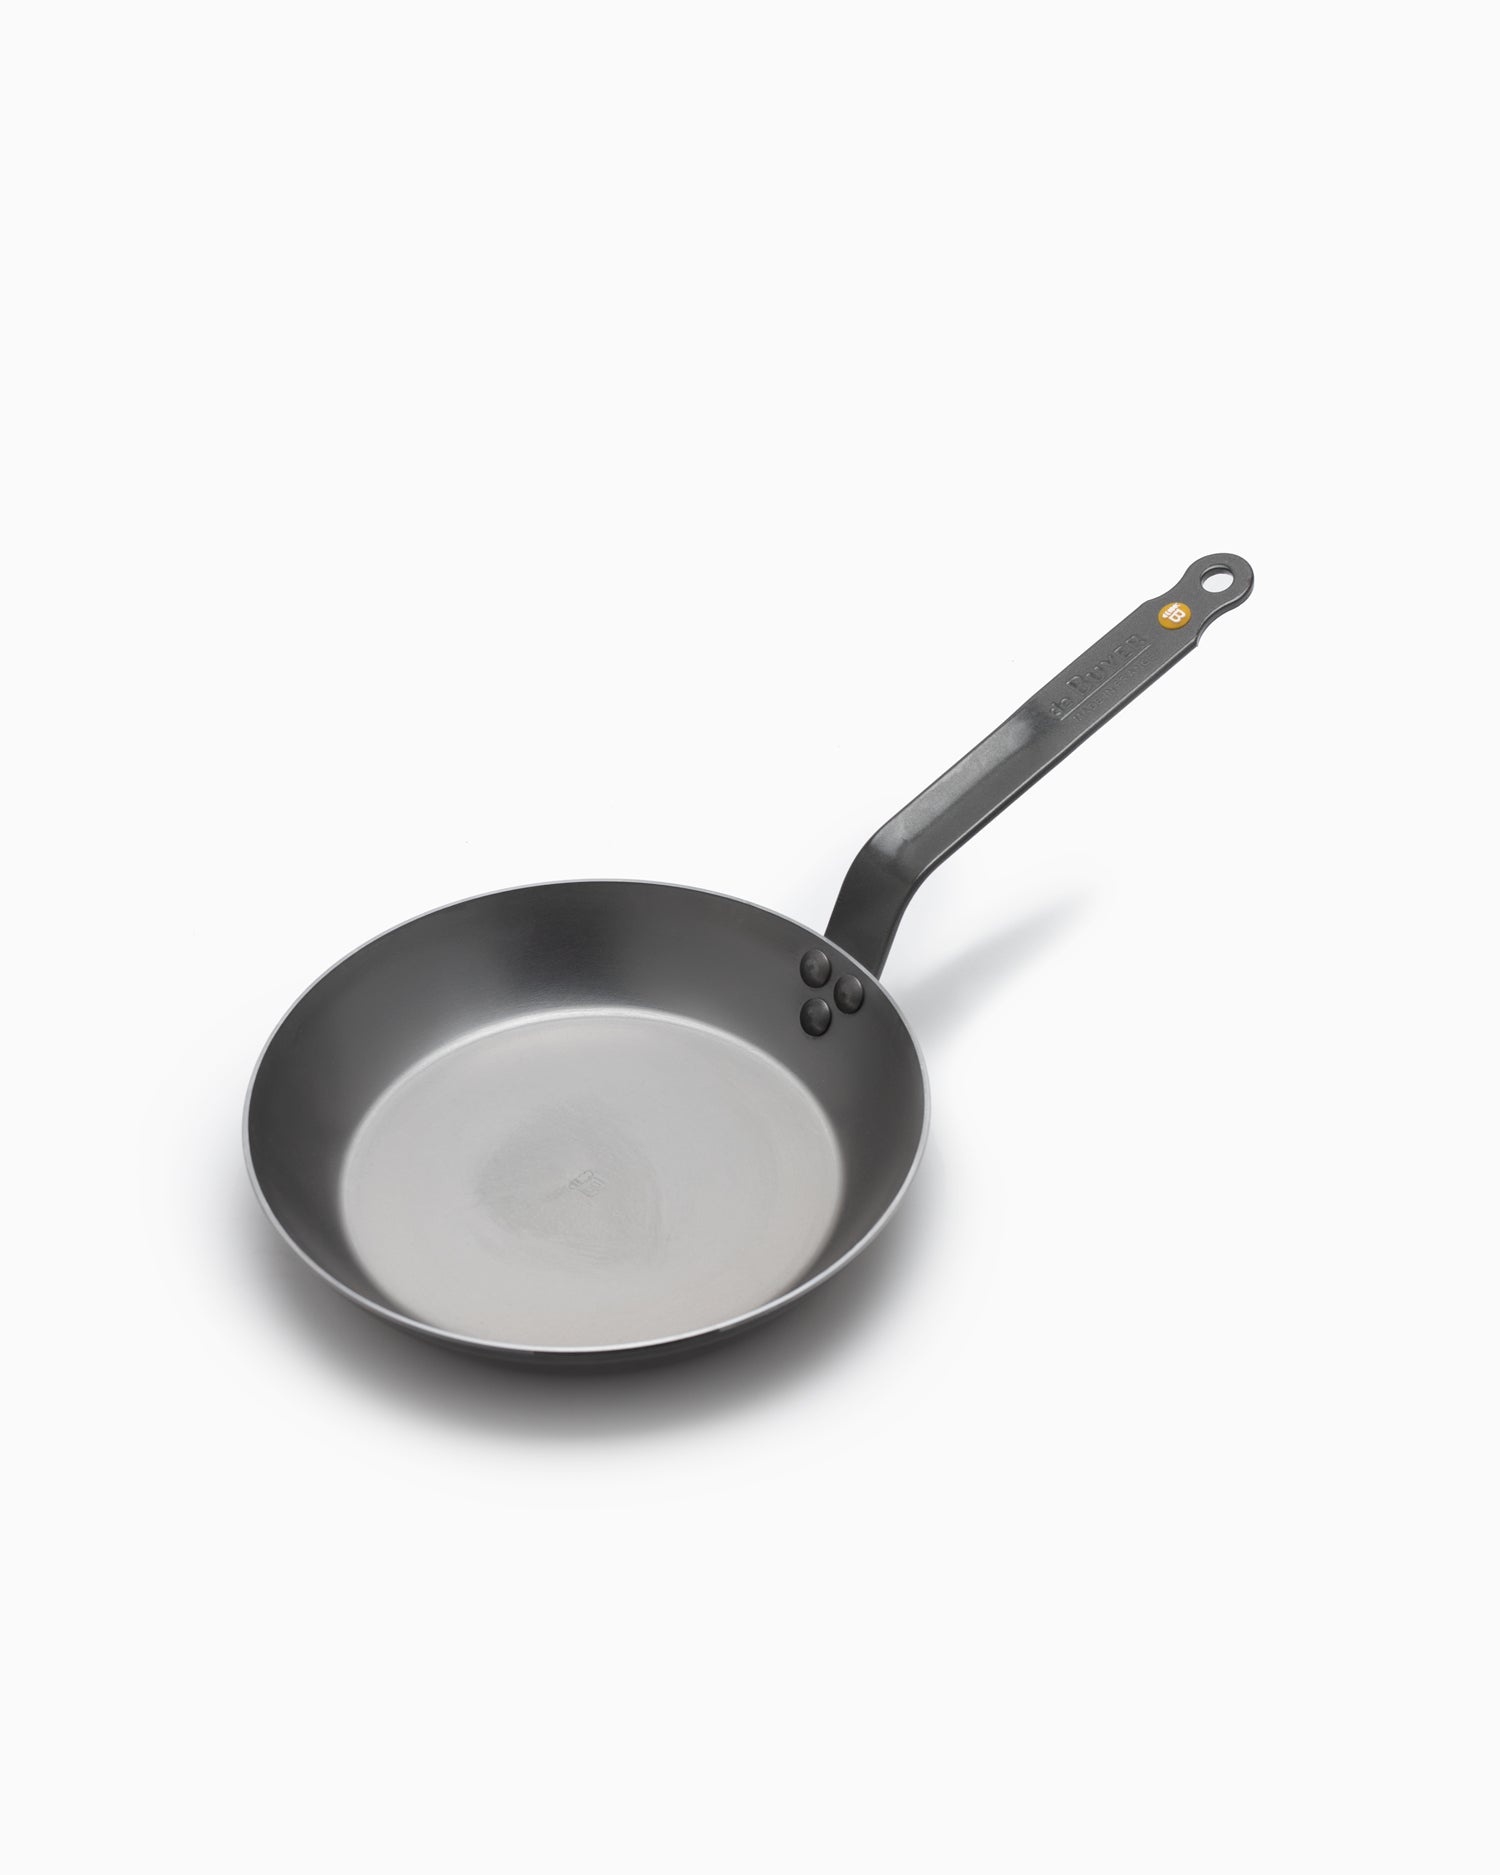 de Buyer 24cm Mineral B Frying Pan